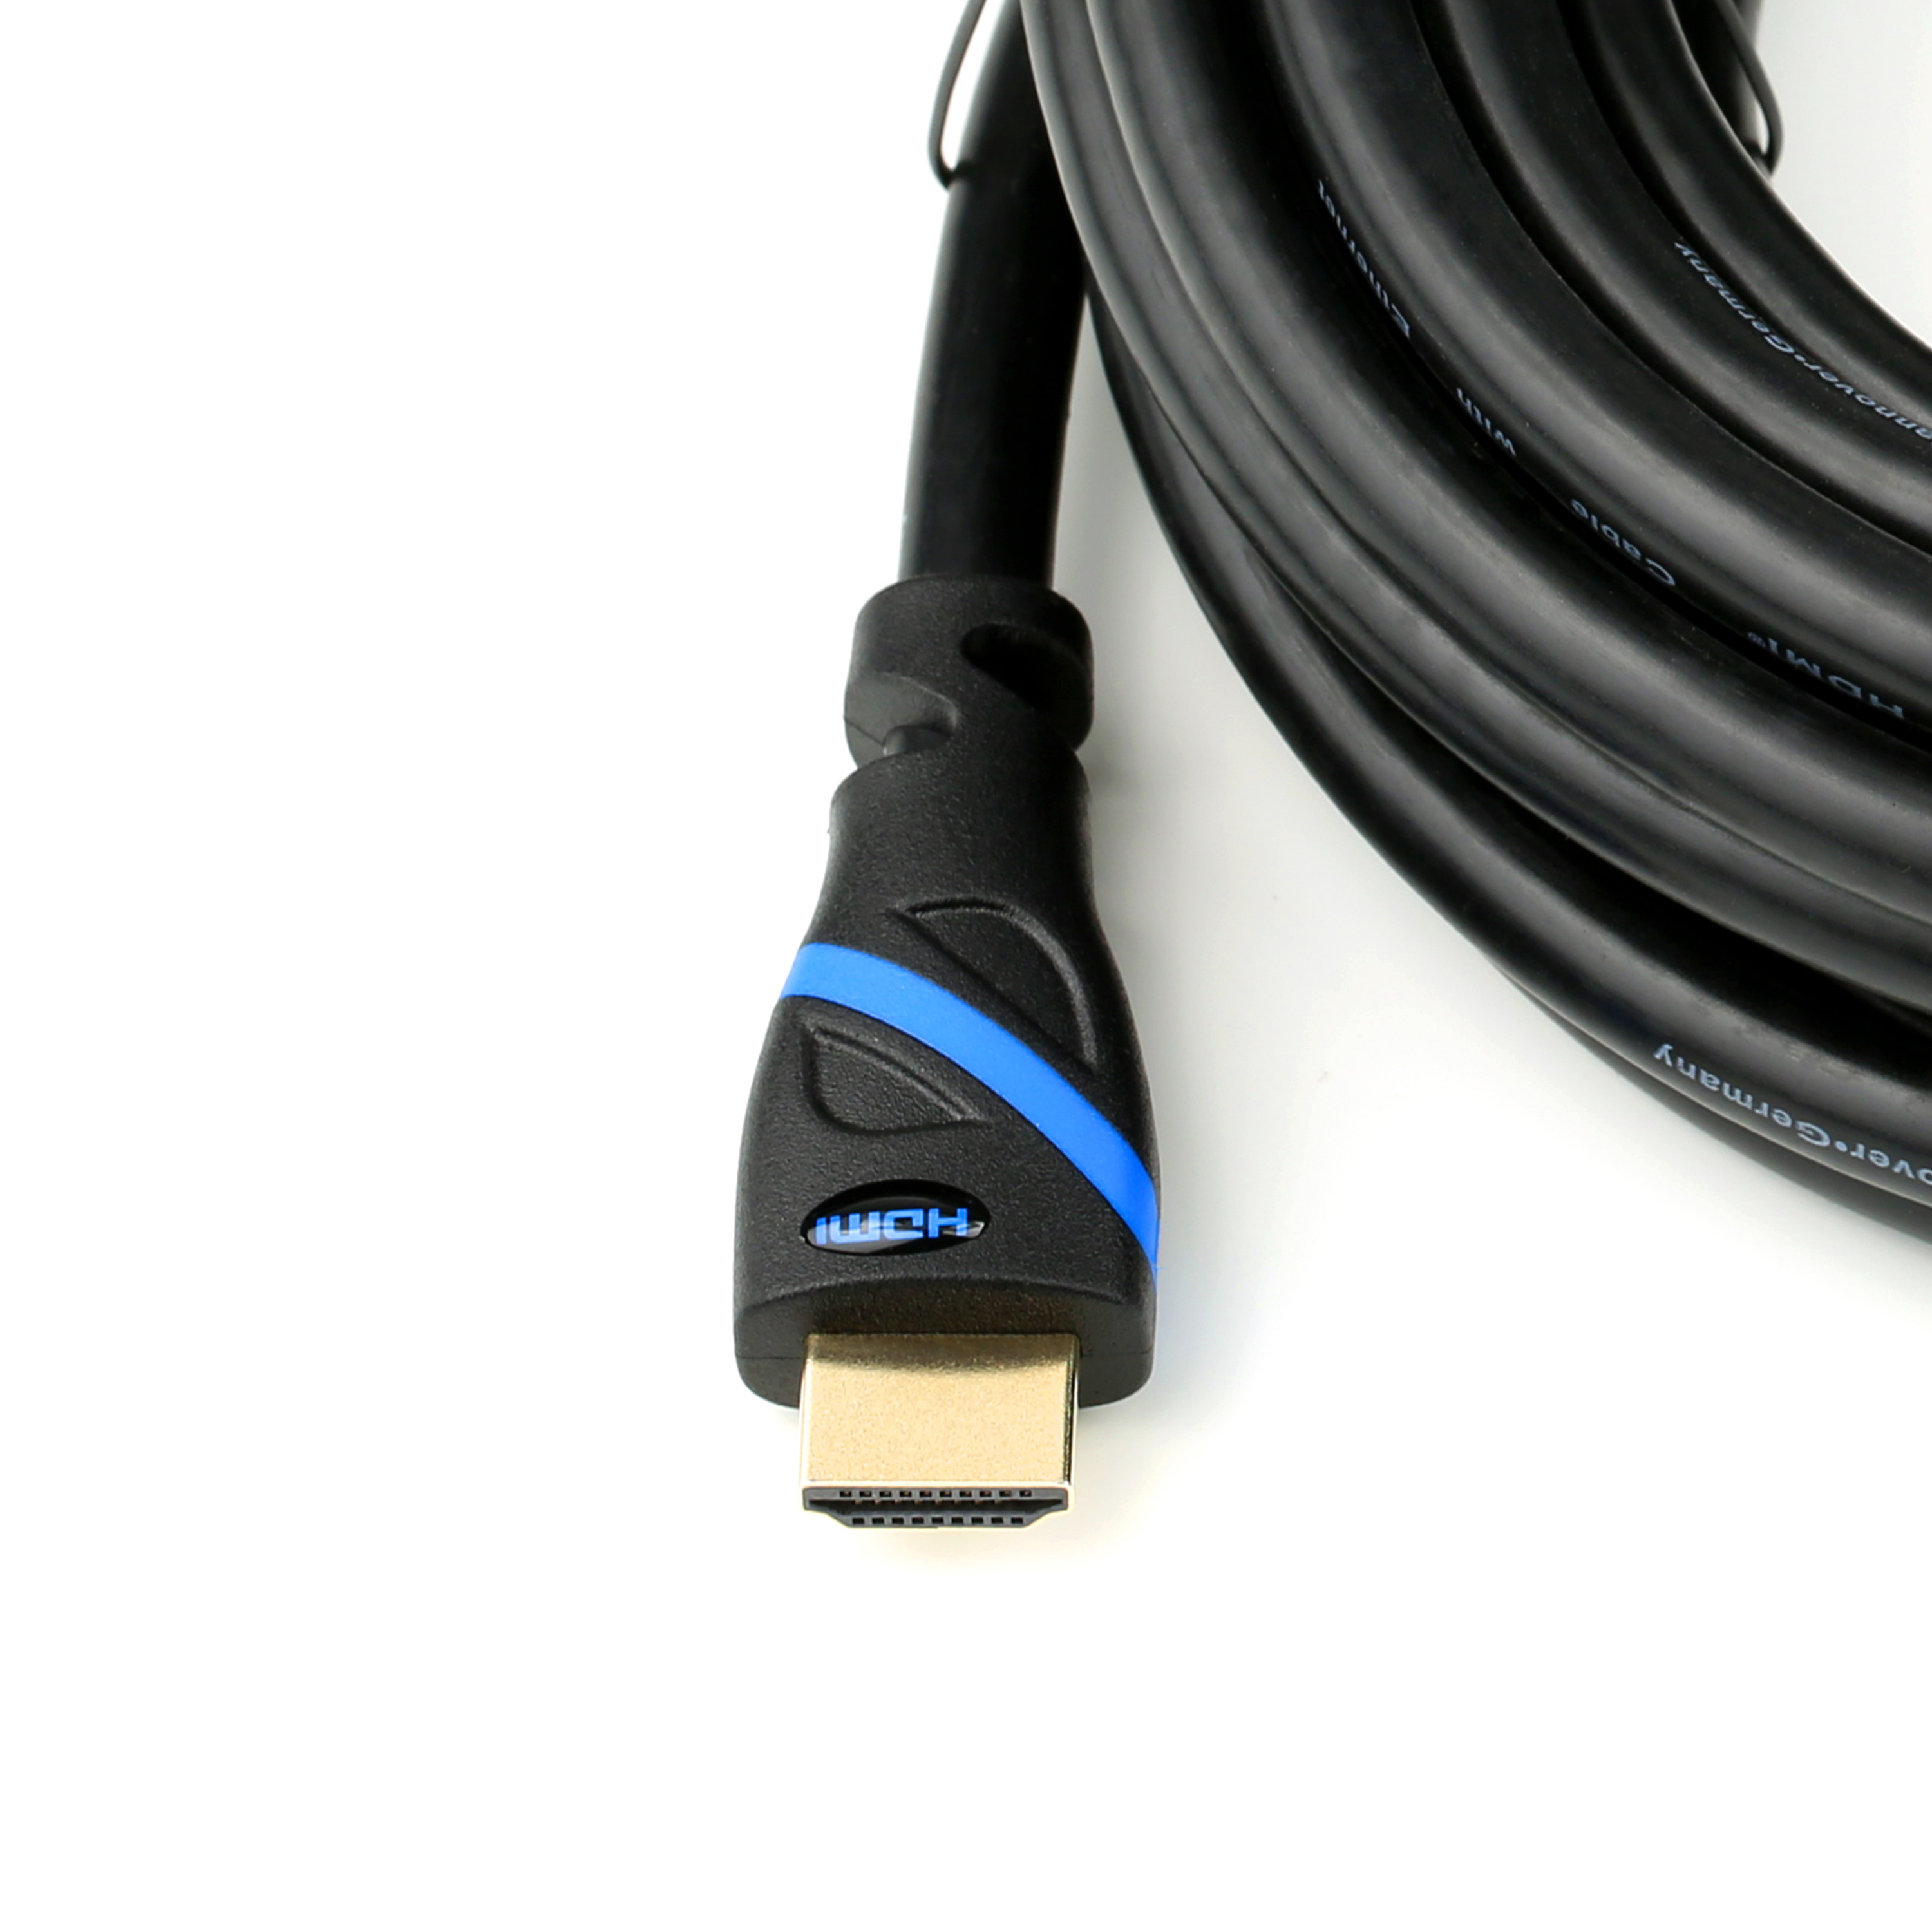 CSL HDMI 0,5m Kabel, 2.0 schwarz/blau Kabel, HDMI